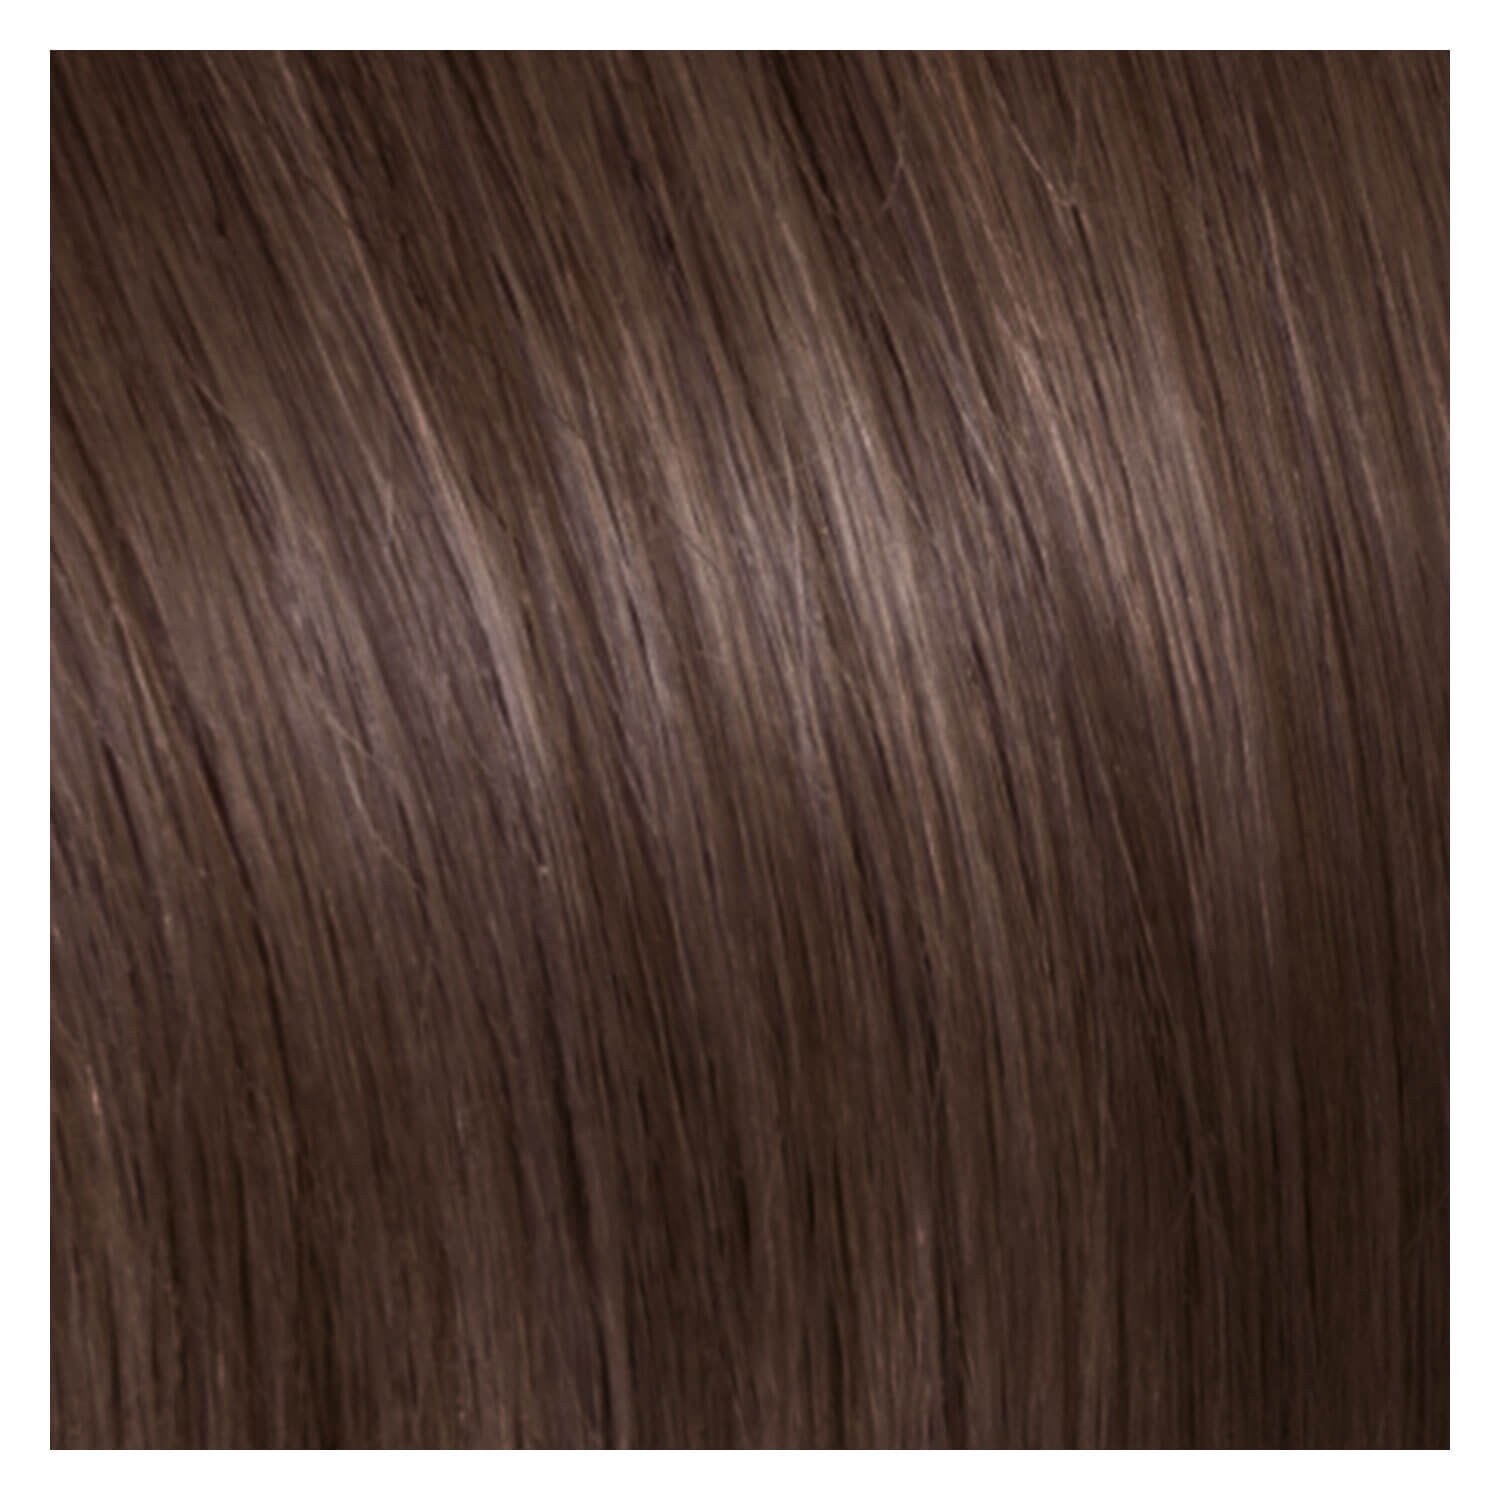 Produktbild von SHE Bonding-System Hair Extensions Straight - 10 Asch Hellblond 55/60cm